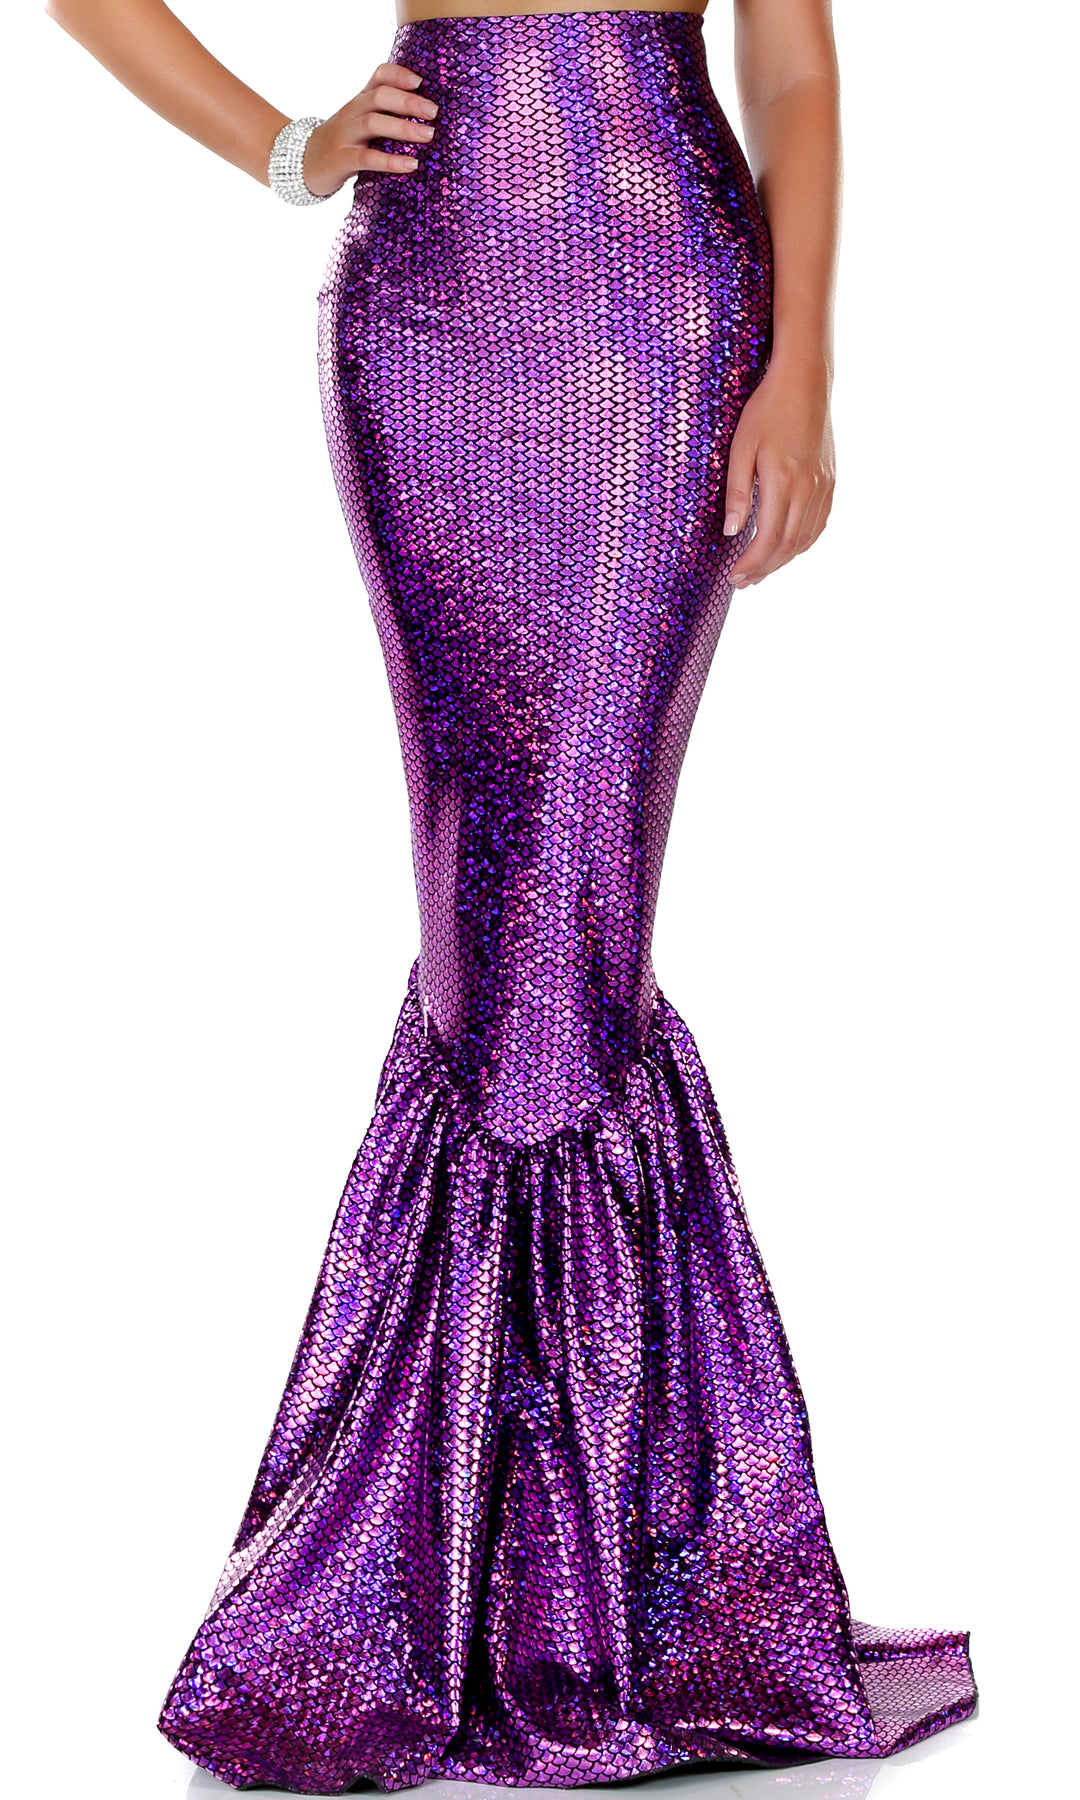 Hologram Mermaid Skirt